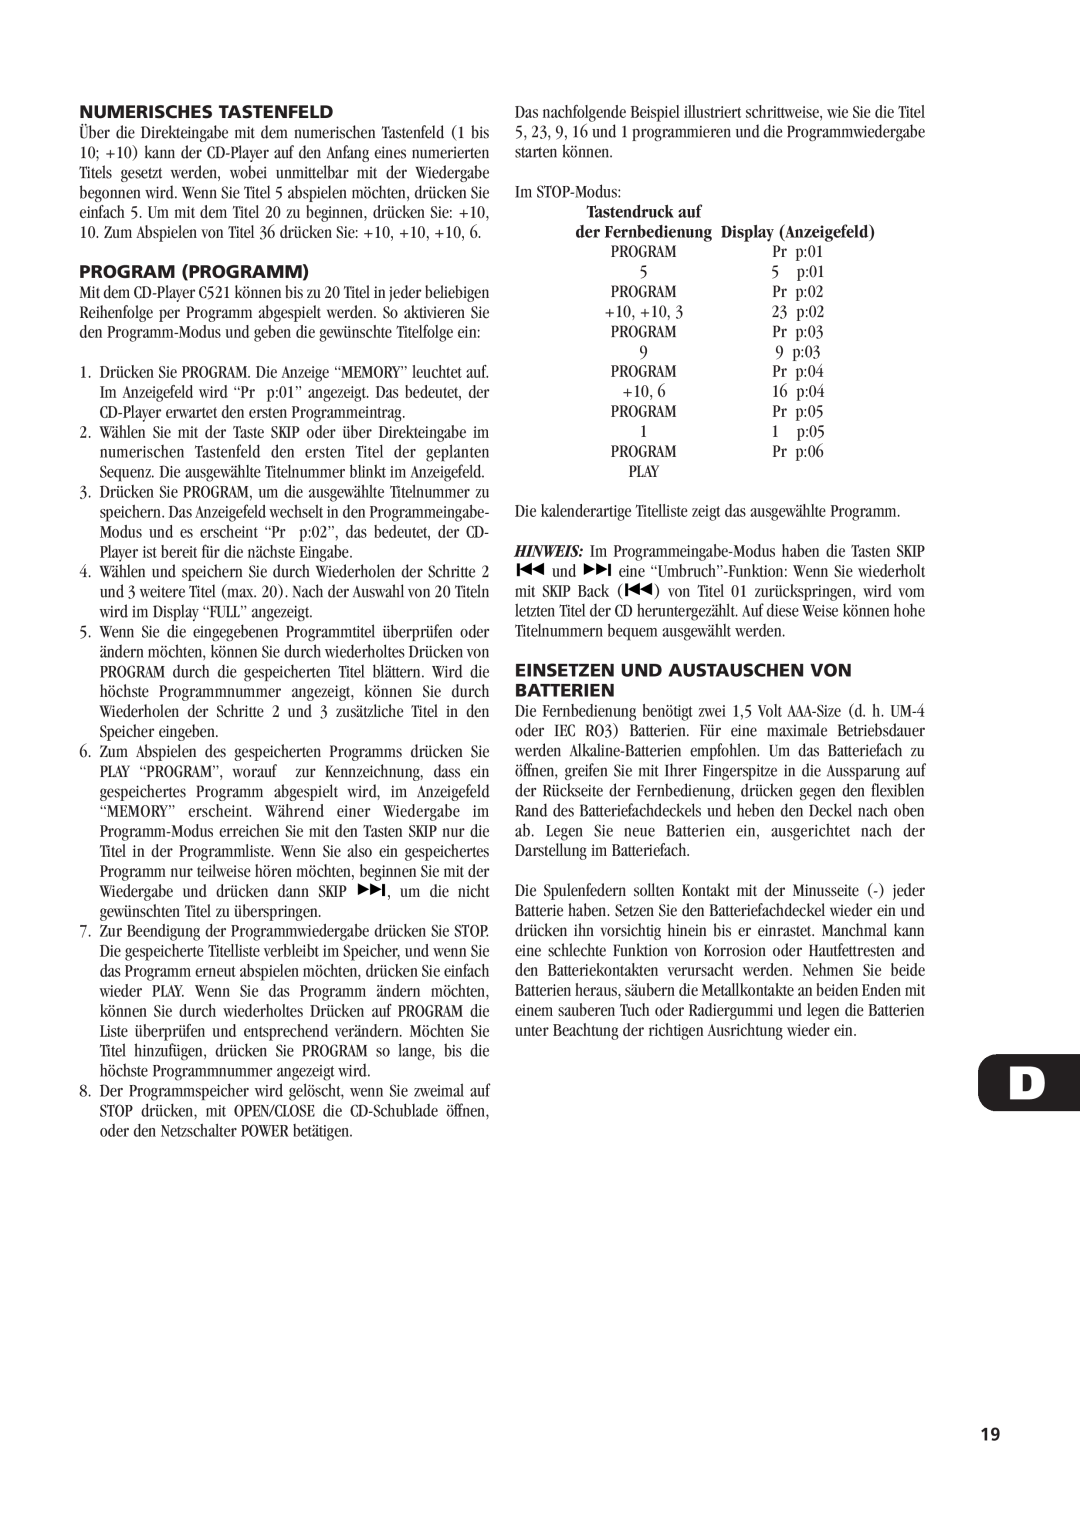 NAD C521 owner manual Numerisches Tastenfeld, Program Programm, Einsetzen Und Austauschen Von Batterien 